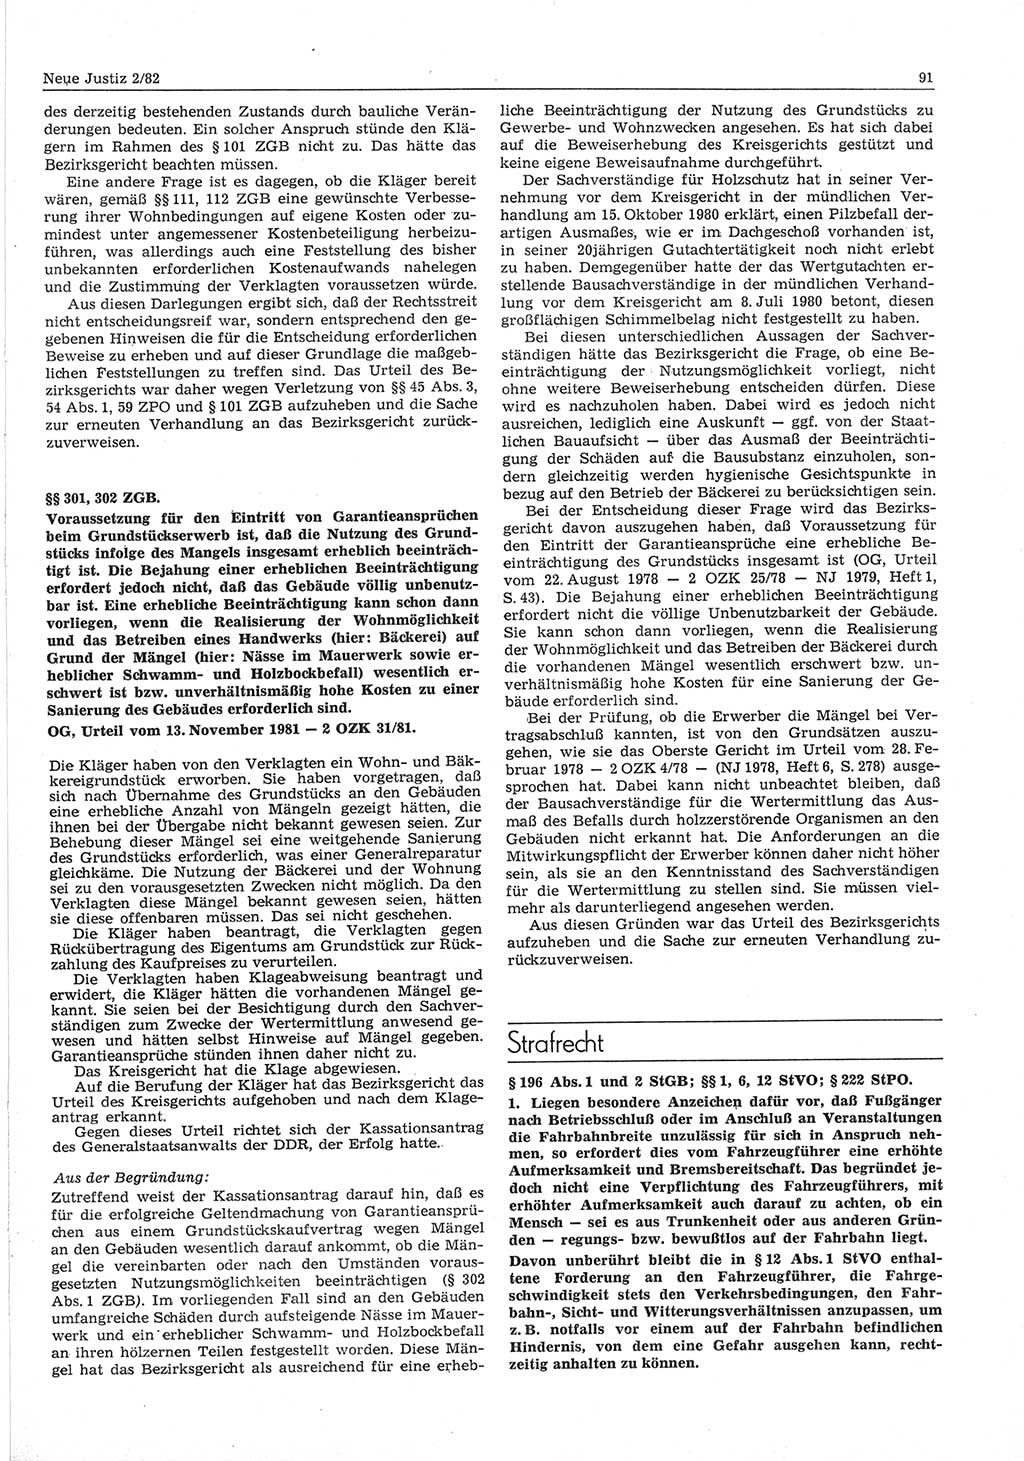 Neue Justiz (NJ), Zeitschrift für sozialistisches Recht und Gesetzlichkeit [Deutsche Demokratische Republik (DDR)], 36. Jahrgang 1982, Seite 91 (NJ DDR 1982, S. 91)